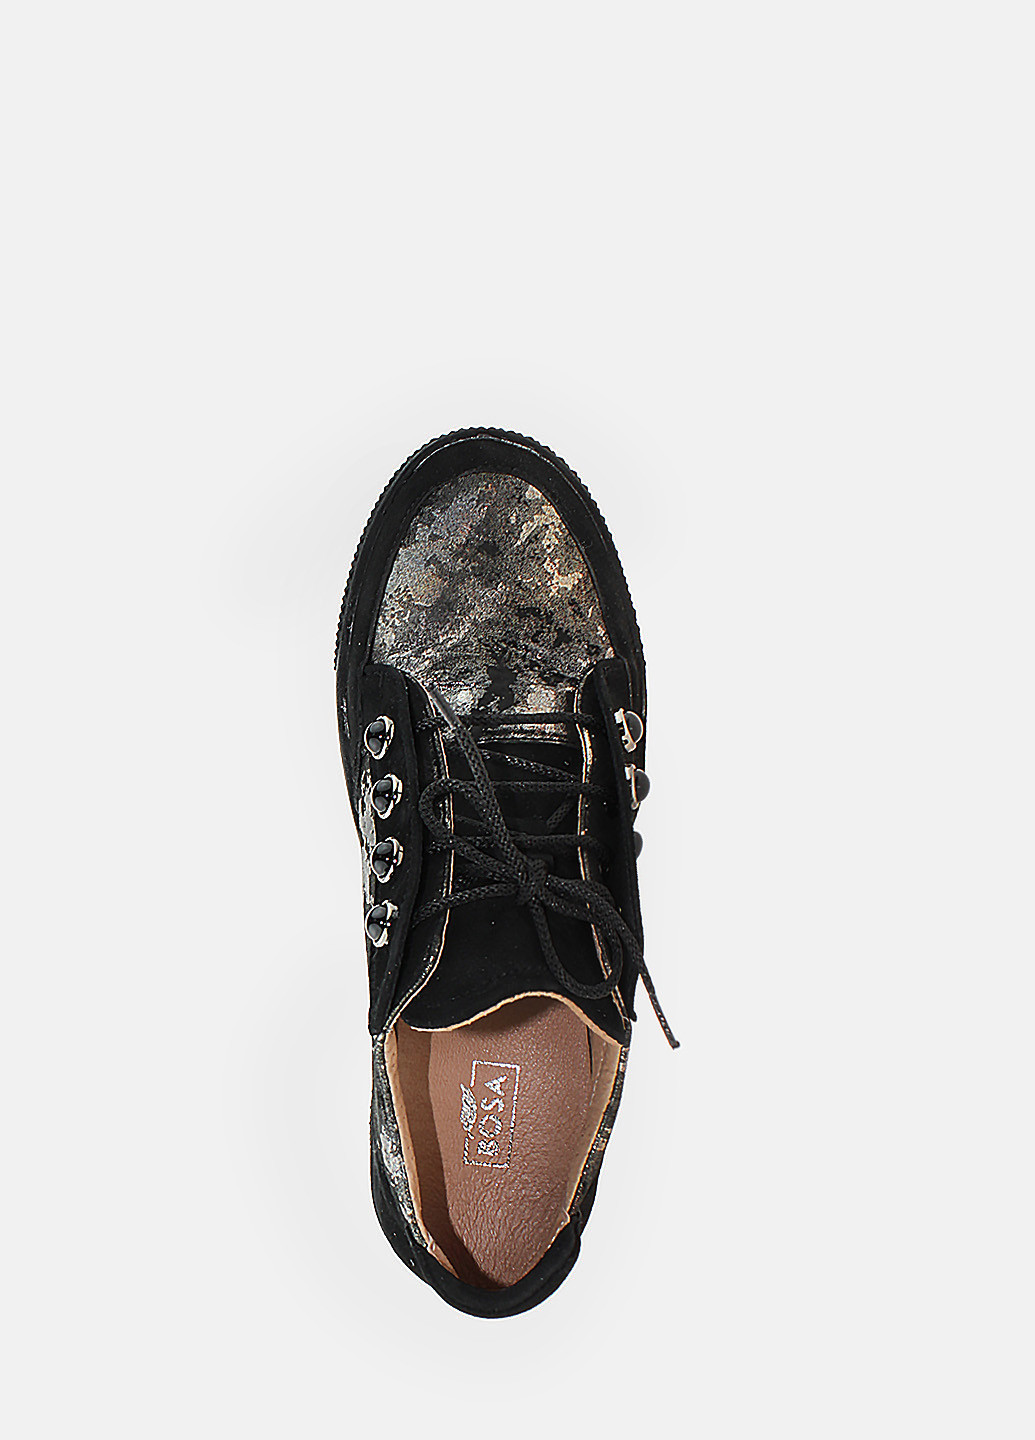 Осенние ботинки rf0032 черный Favi из натуральной замши